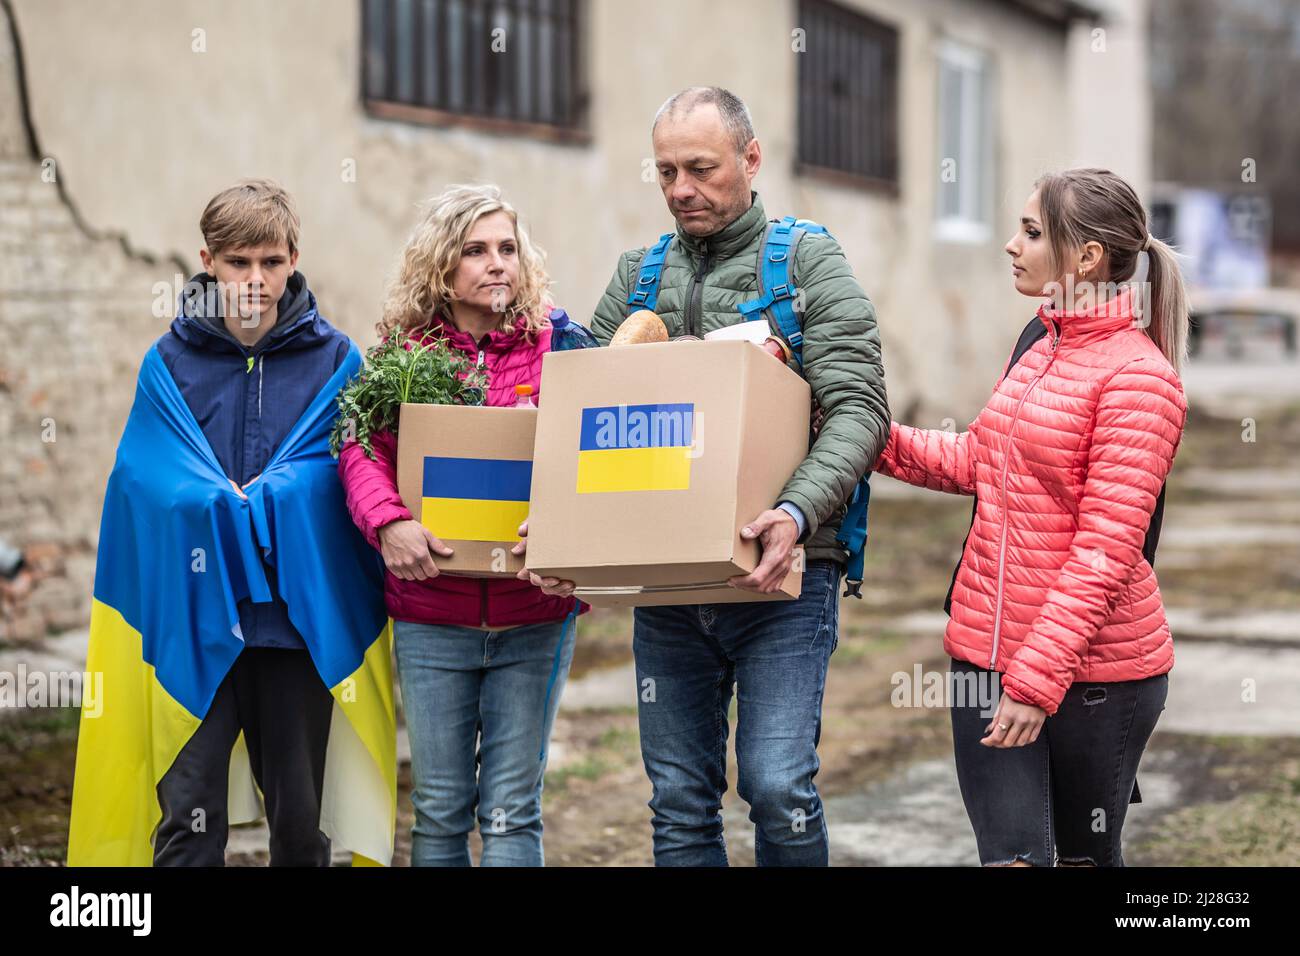 La famille ukrainienne accepte des boîtes d'aide humanitaire après que la Russie ait attaqué l'Ukraine à l'origine de la crise. Banque D'Images